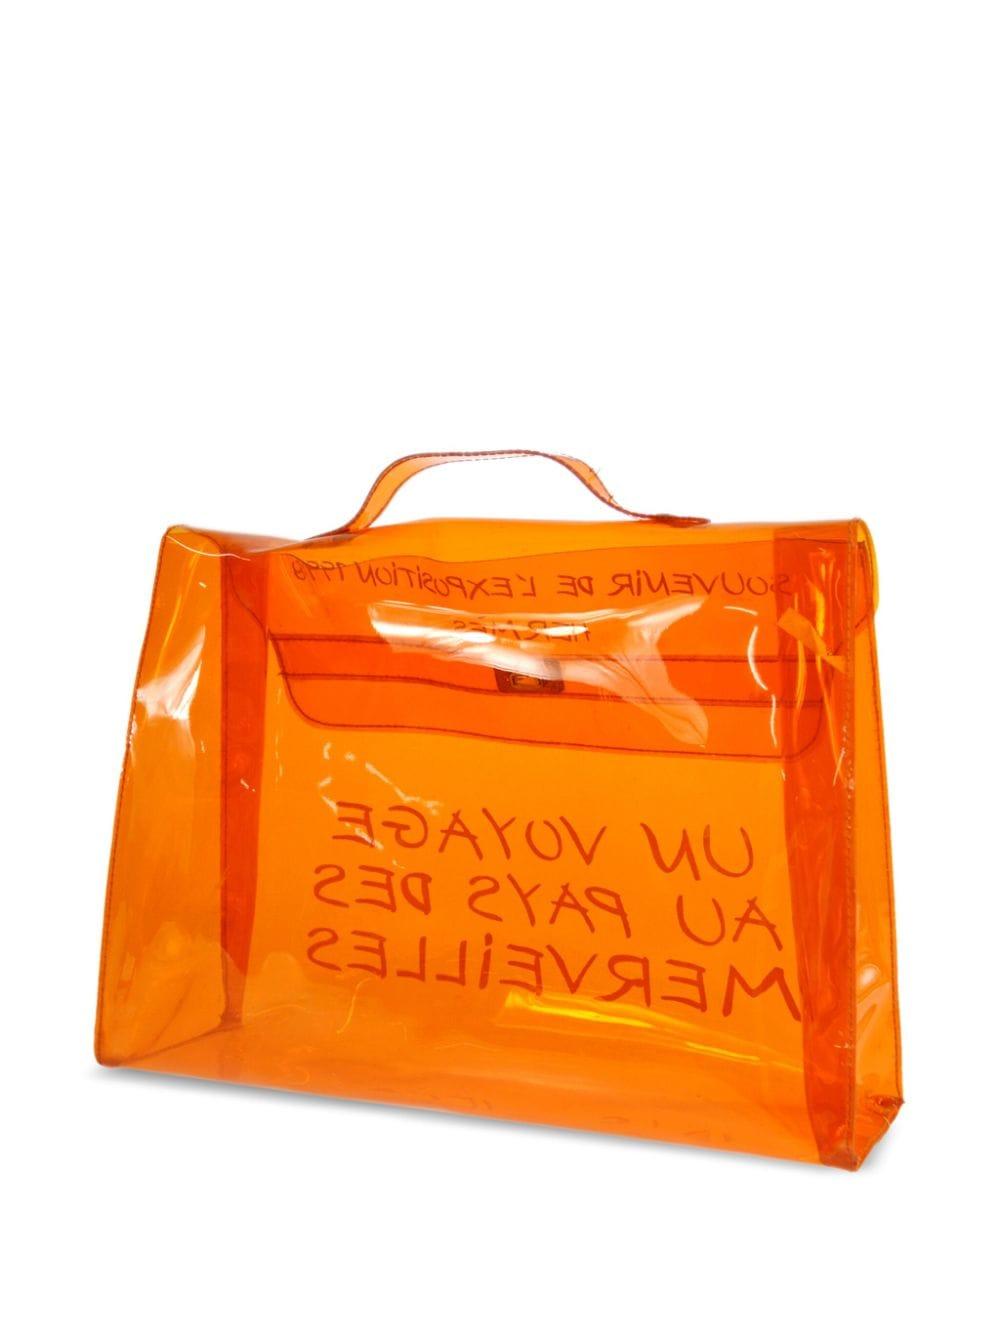 Sac de plage Kelly 40 en vinyle orange Hermes 1998, en forme de sac en plastique transparent, avec des accessoires en métal argenté doré, un slogan imprimé sur le devant, une fermeture à rabat, une anse simple en vinyle transparent permettant de